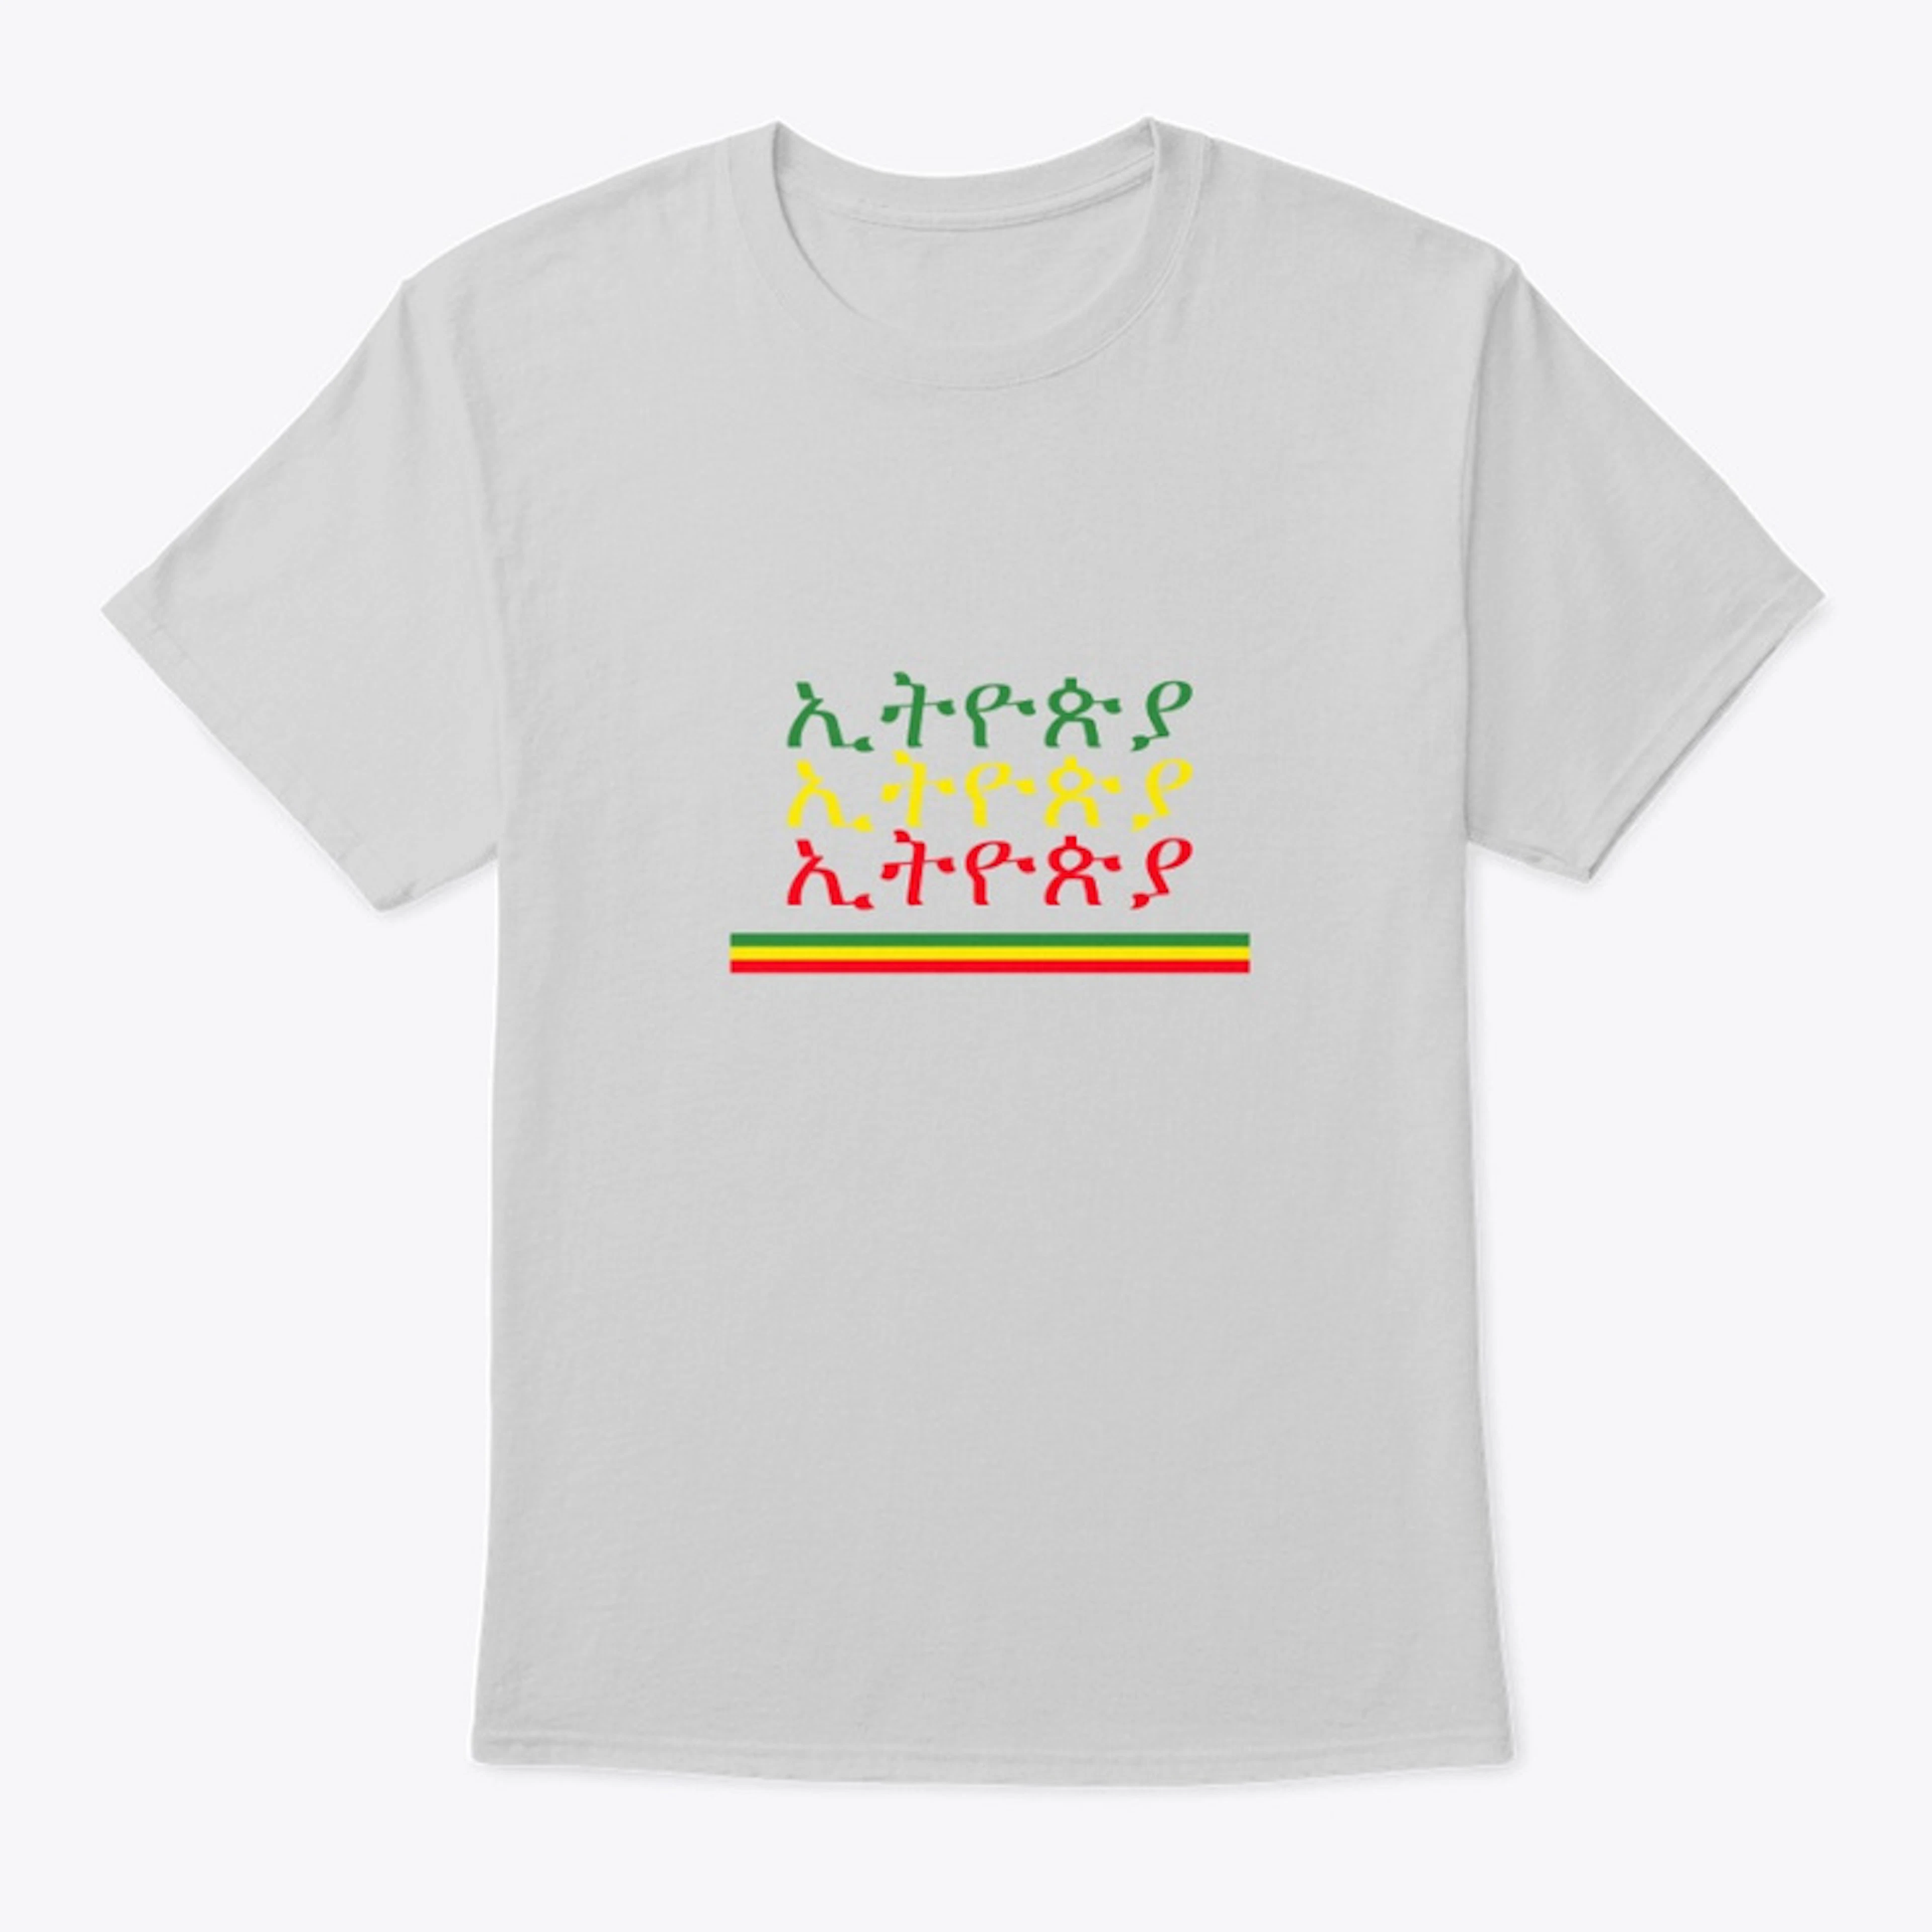 ኢትዮጵያ ETHIOPIA T-SHIRT 